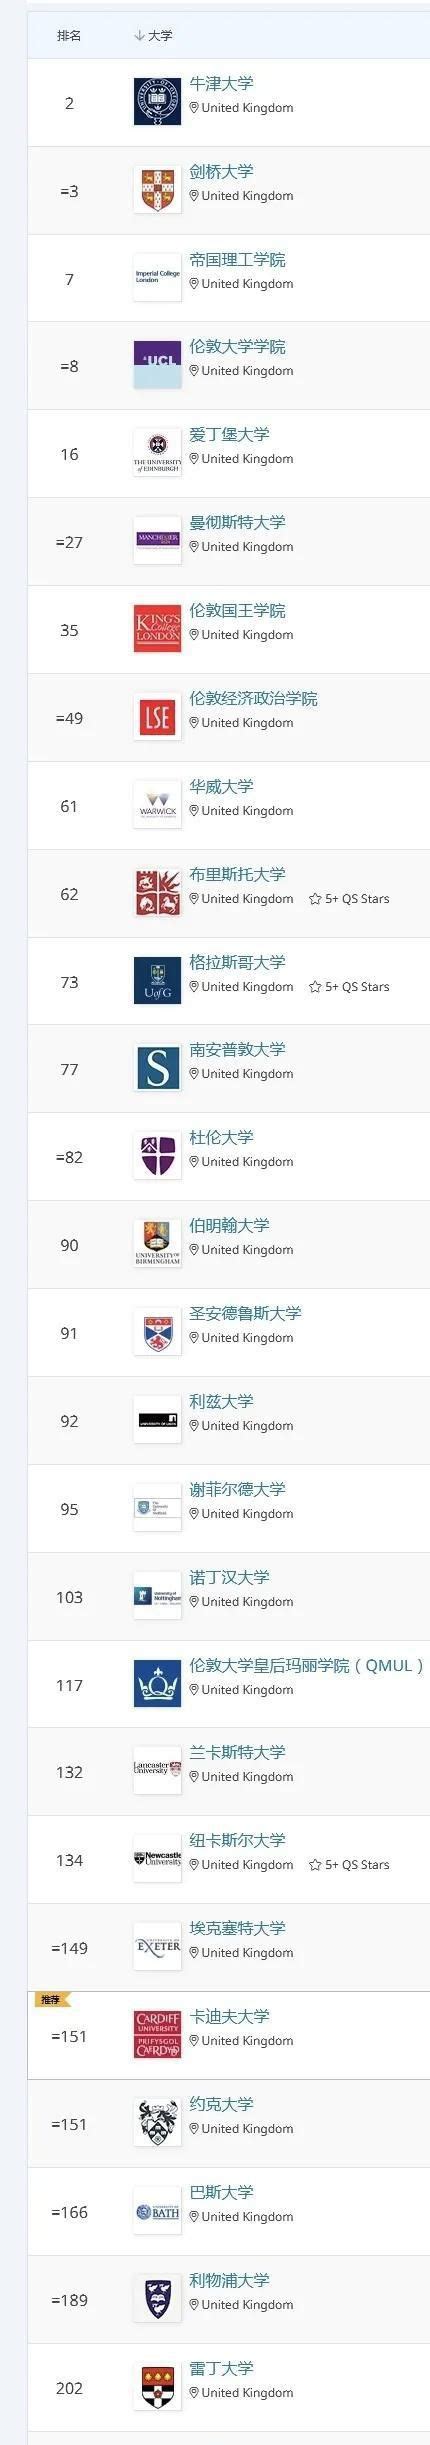 2022年英国大学QS世界排名表一览